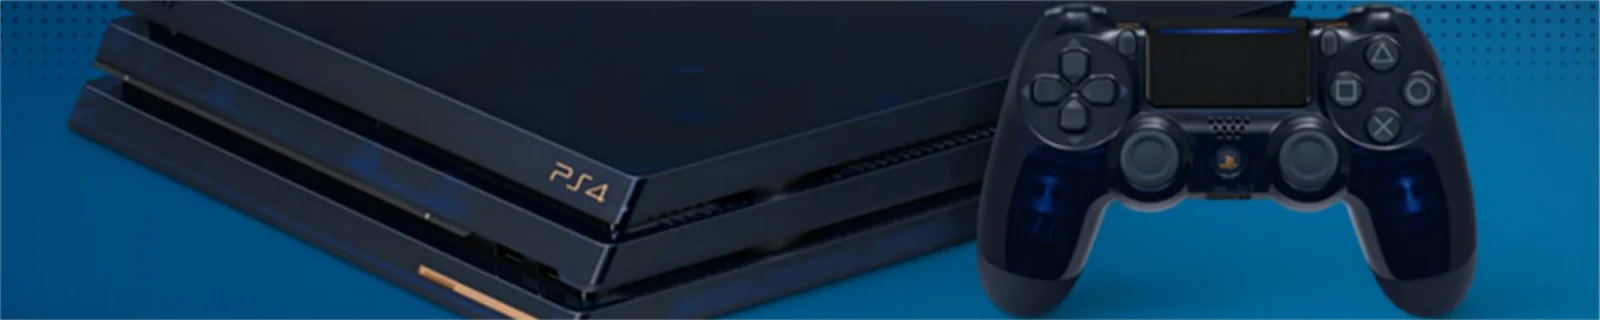 没想到蓝色半透明纪念版PS4 Pro的实物如此优美